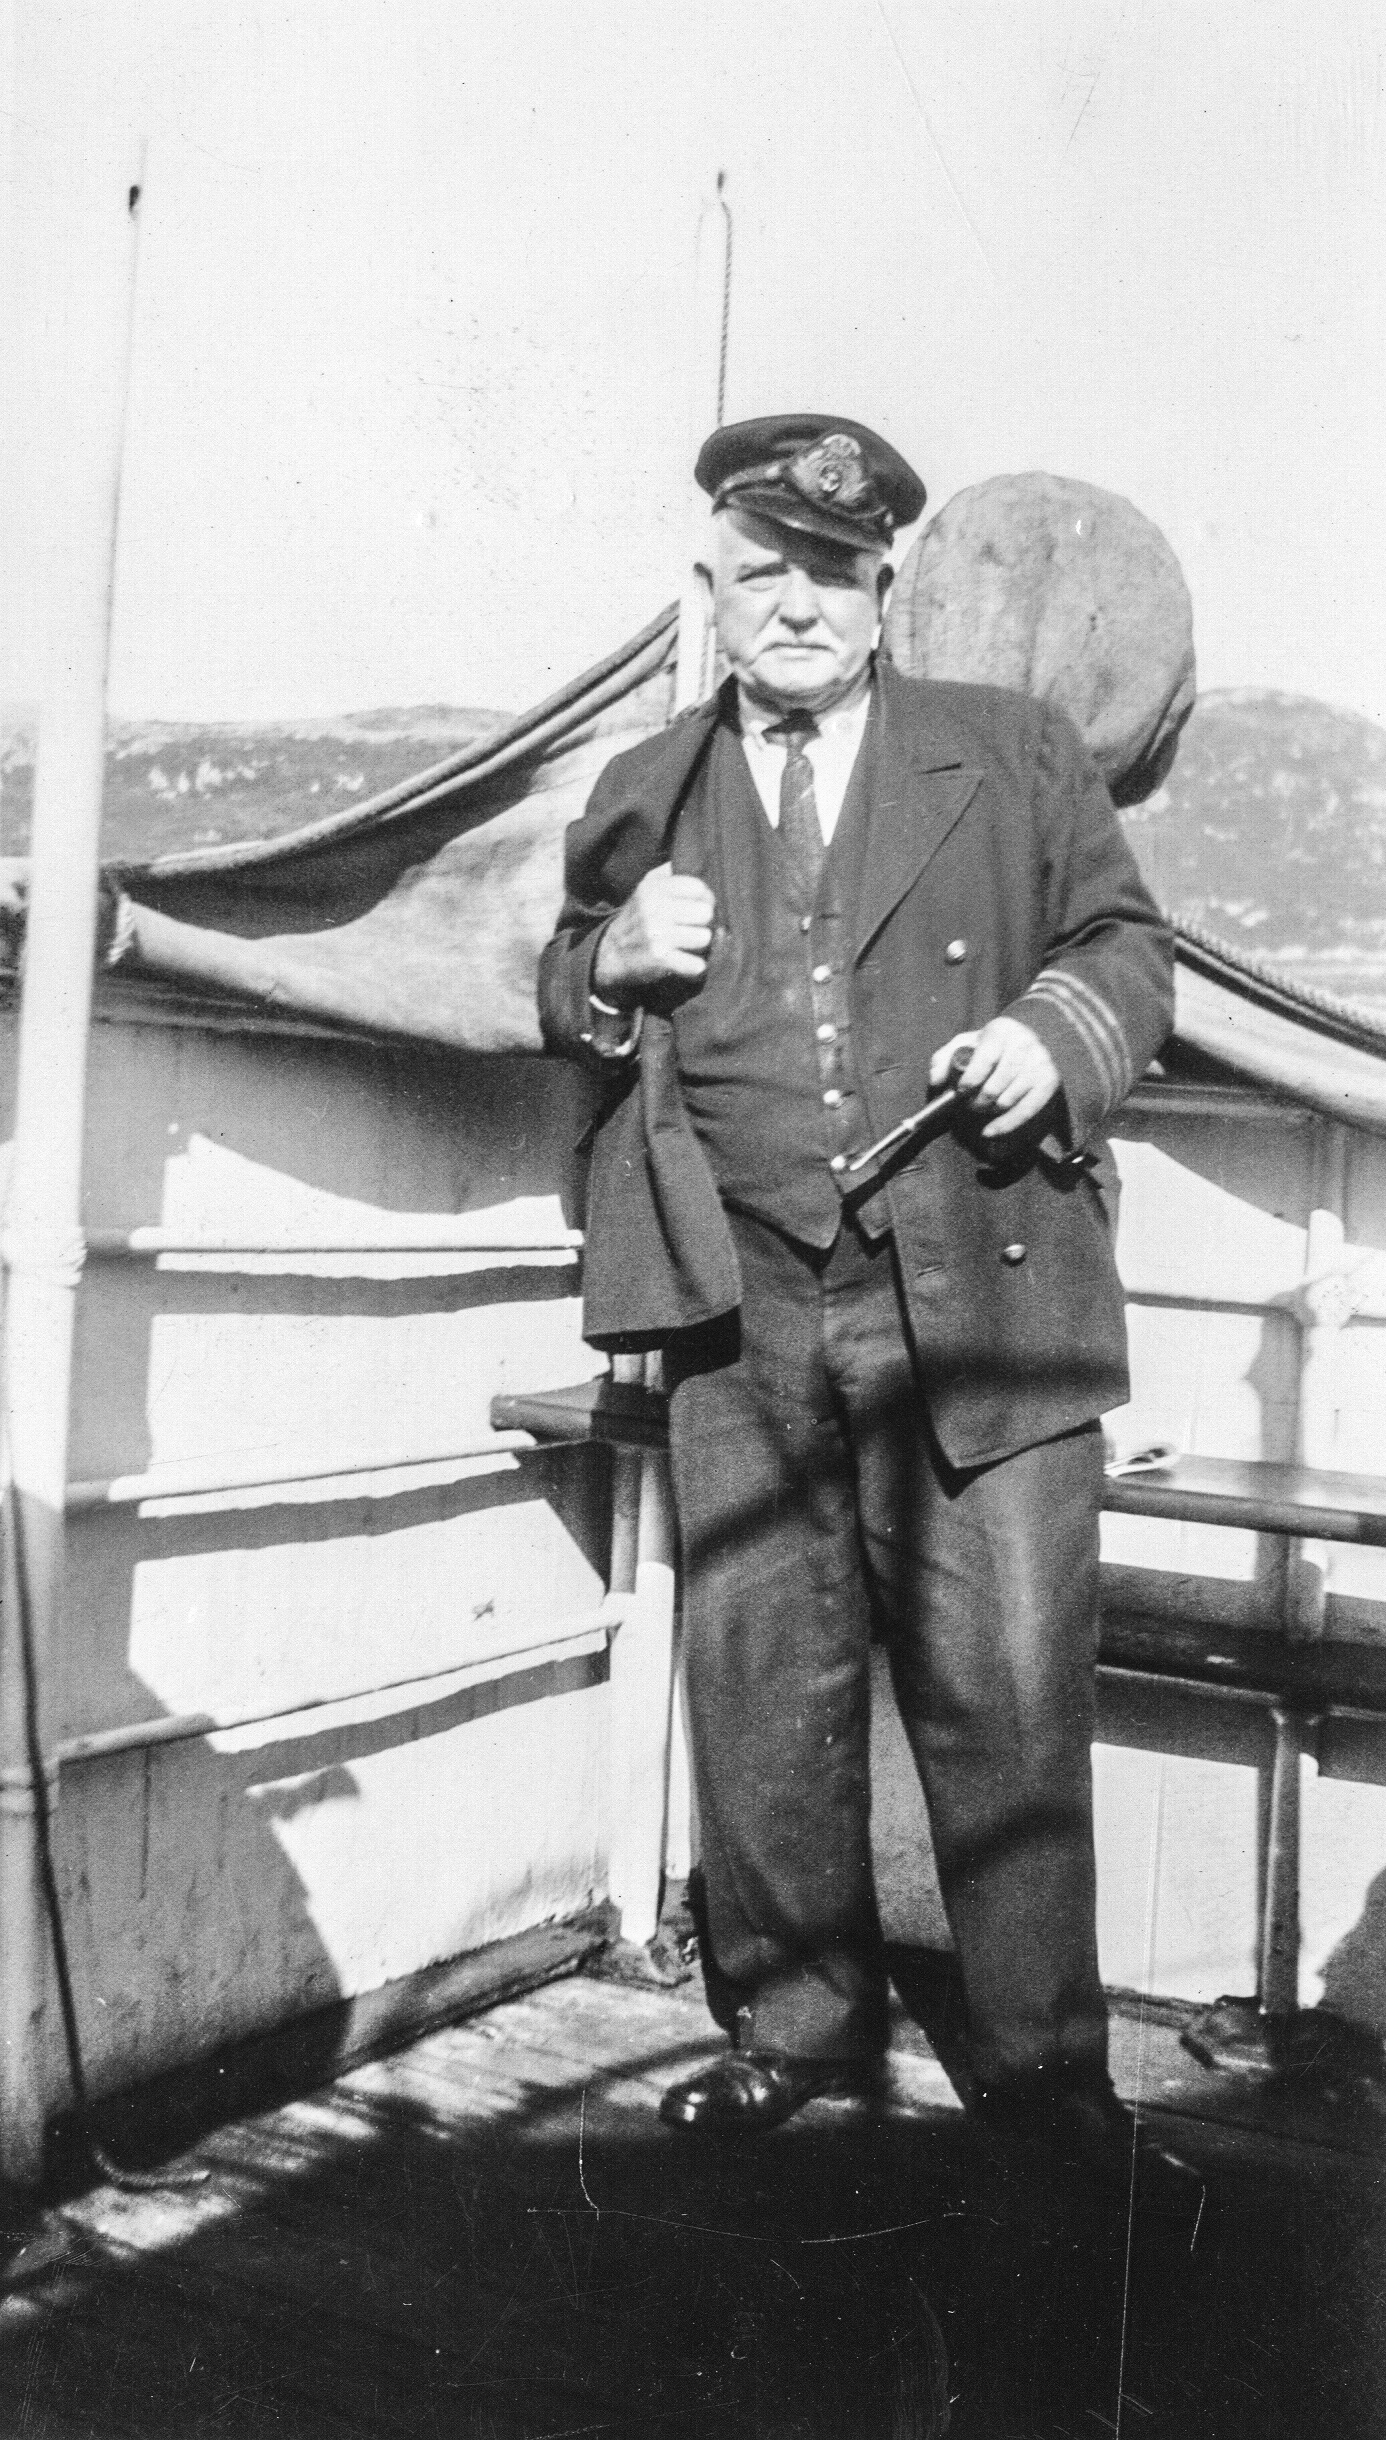 Photographie d'archives en noir et blanc d'un homme en uniforme avec une casquette à visière debout sur le pont d'un bateau tenant une pipe dans sa main gauche. Il y a des collines en arrière-plan.